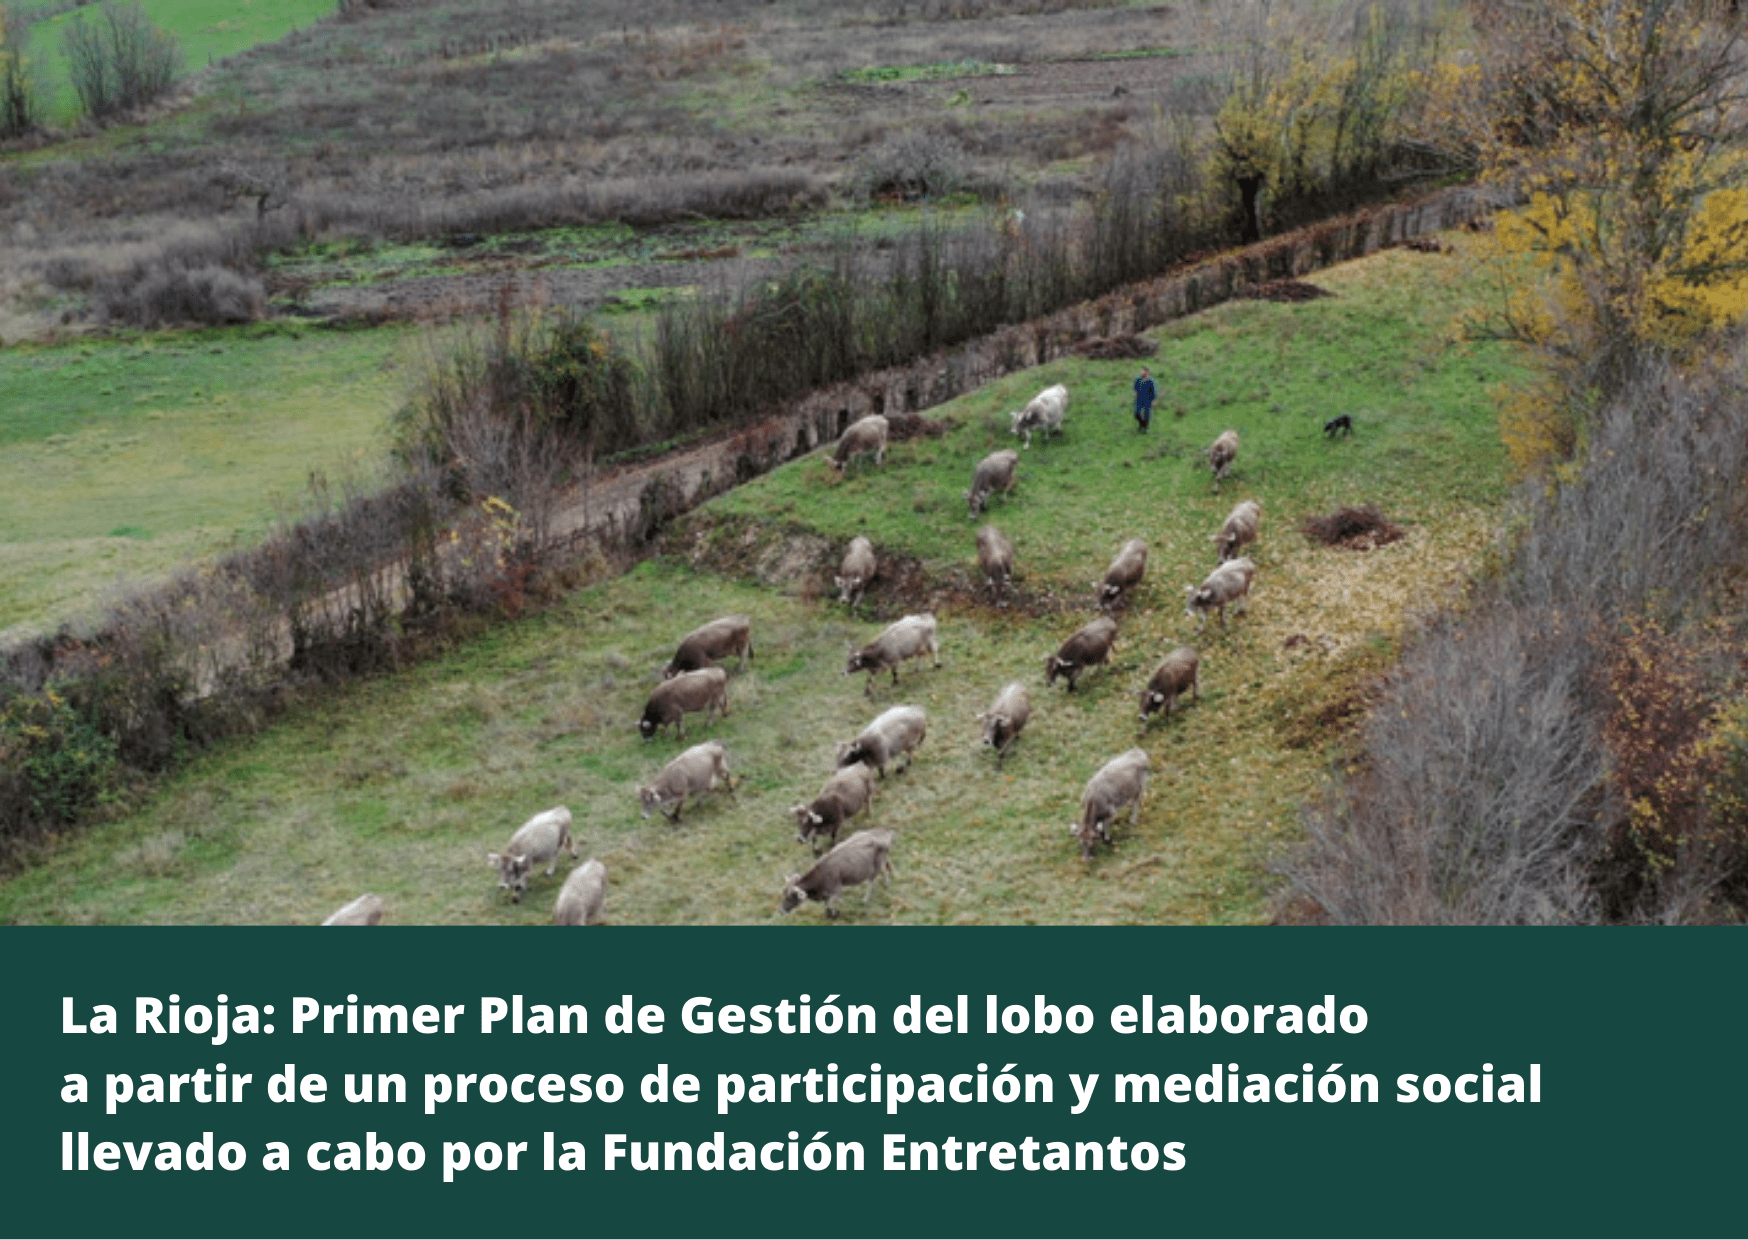 La Rioja: Primer Plan de Gestión del lobo elaborado a partir de un proceso de participación y mediación social llevado a cabo por la Fundación Entretantos